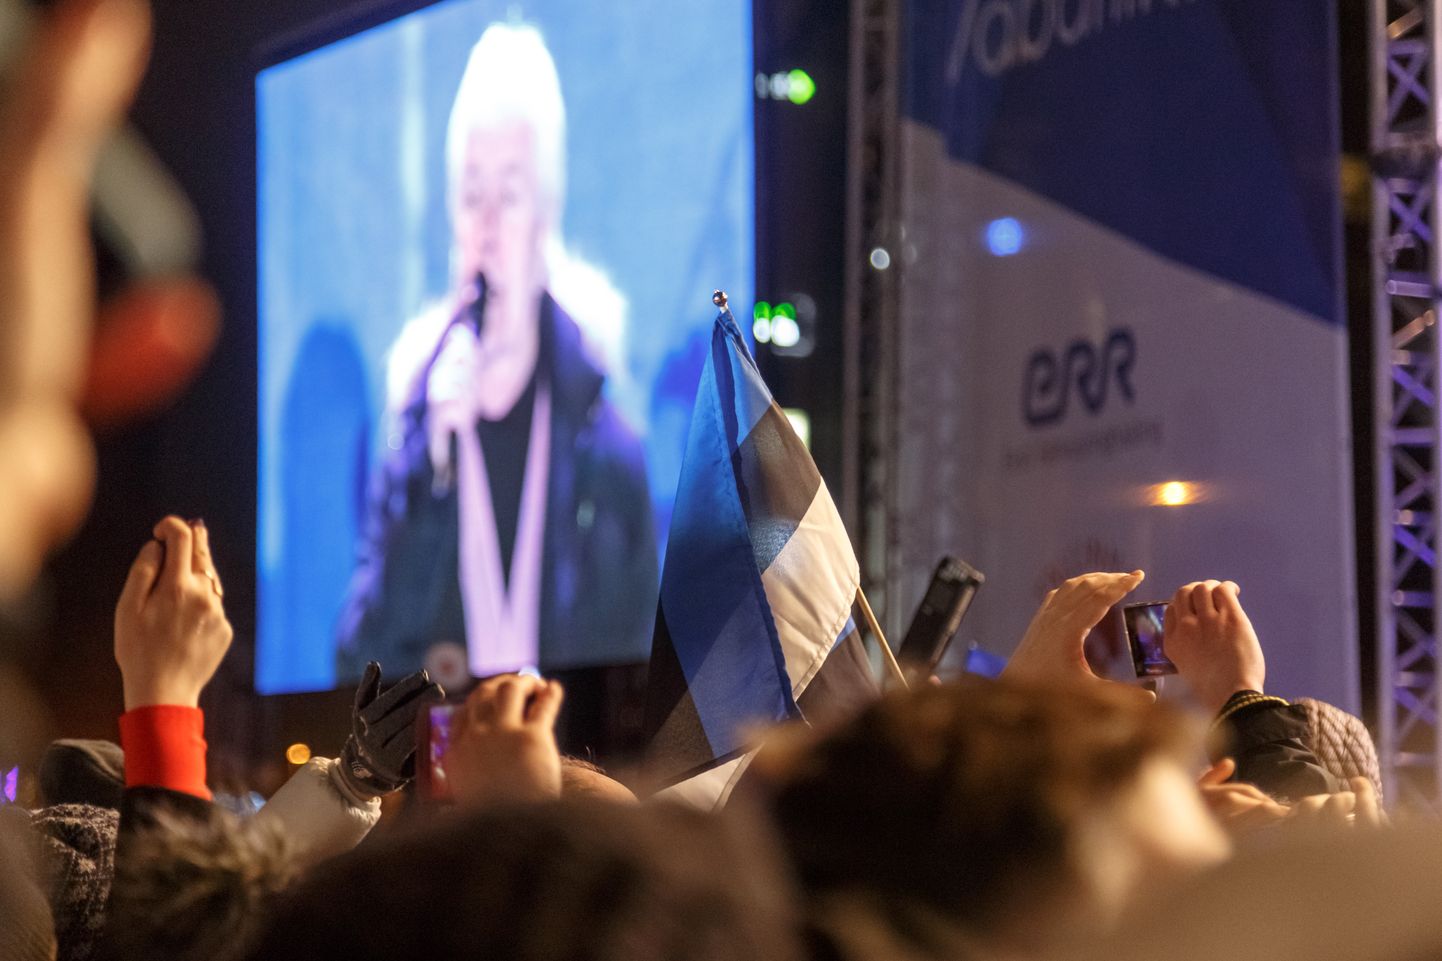 Hümni asendamine Ivo Linna lauluga "Eestlane olen ja eestlaseks jään" ja sellega kaasnenud diskussioon oli Pärnumaa ajakirjanike arvates vajalik, et tuletada meile meelde riigi sümbolite väärtust.